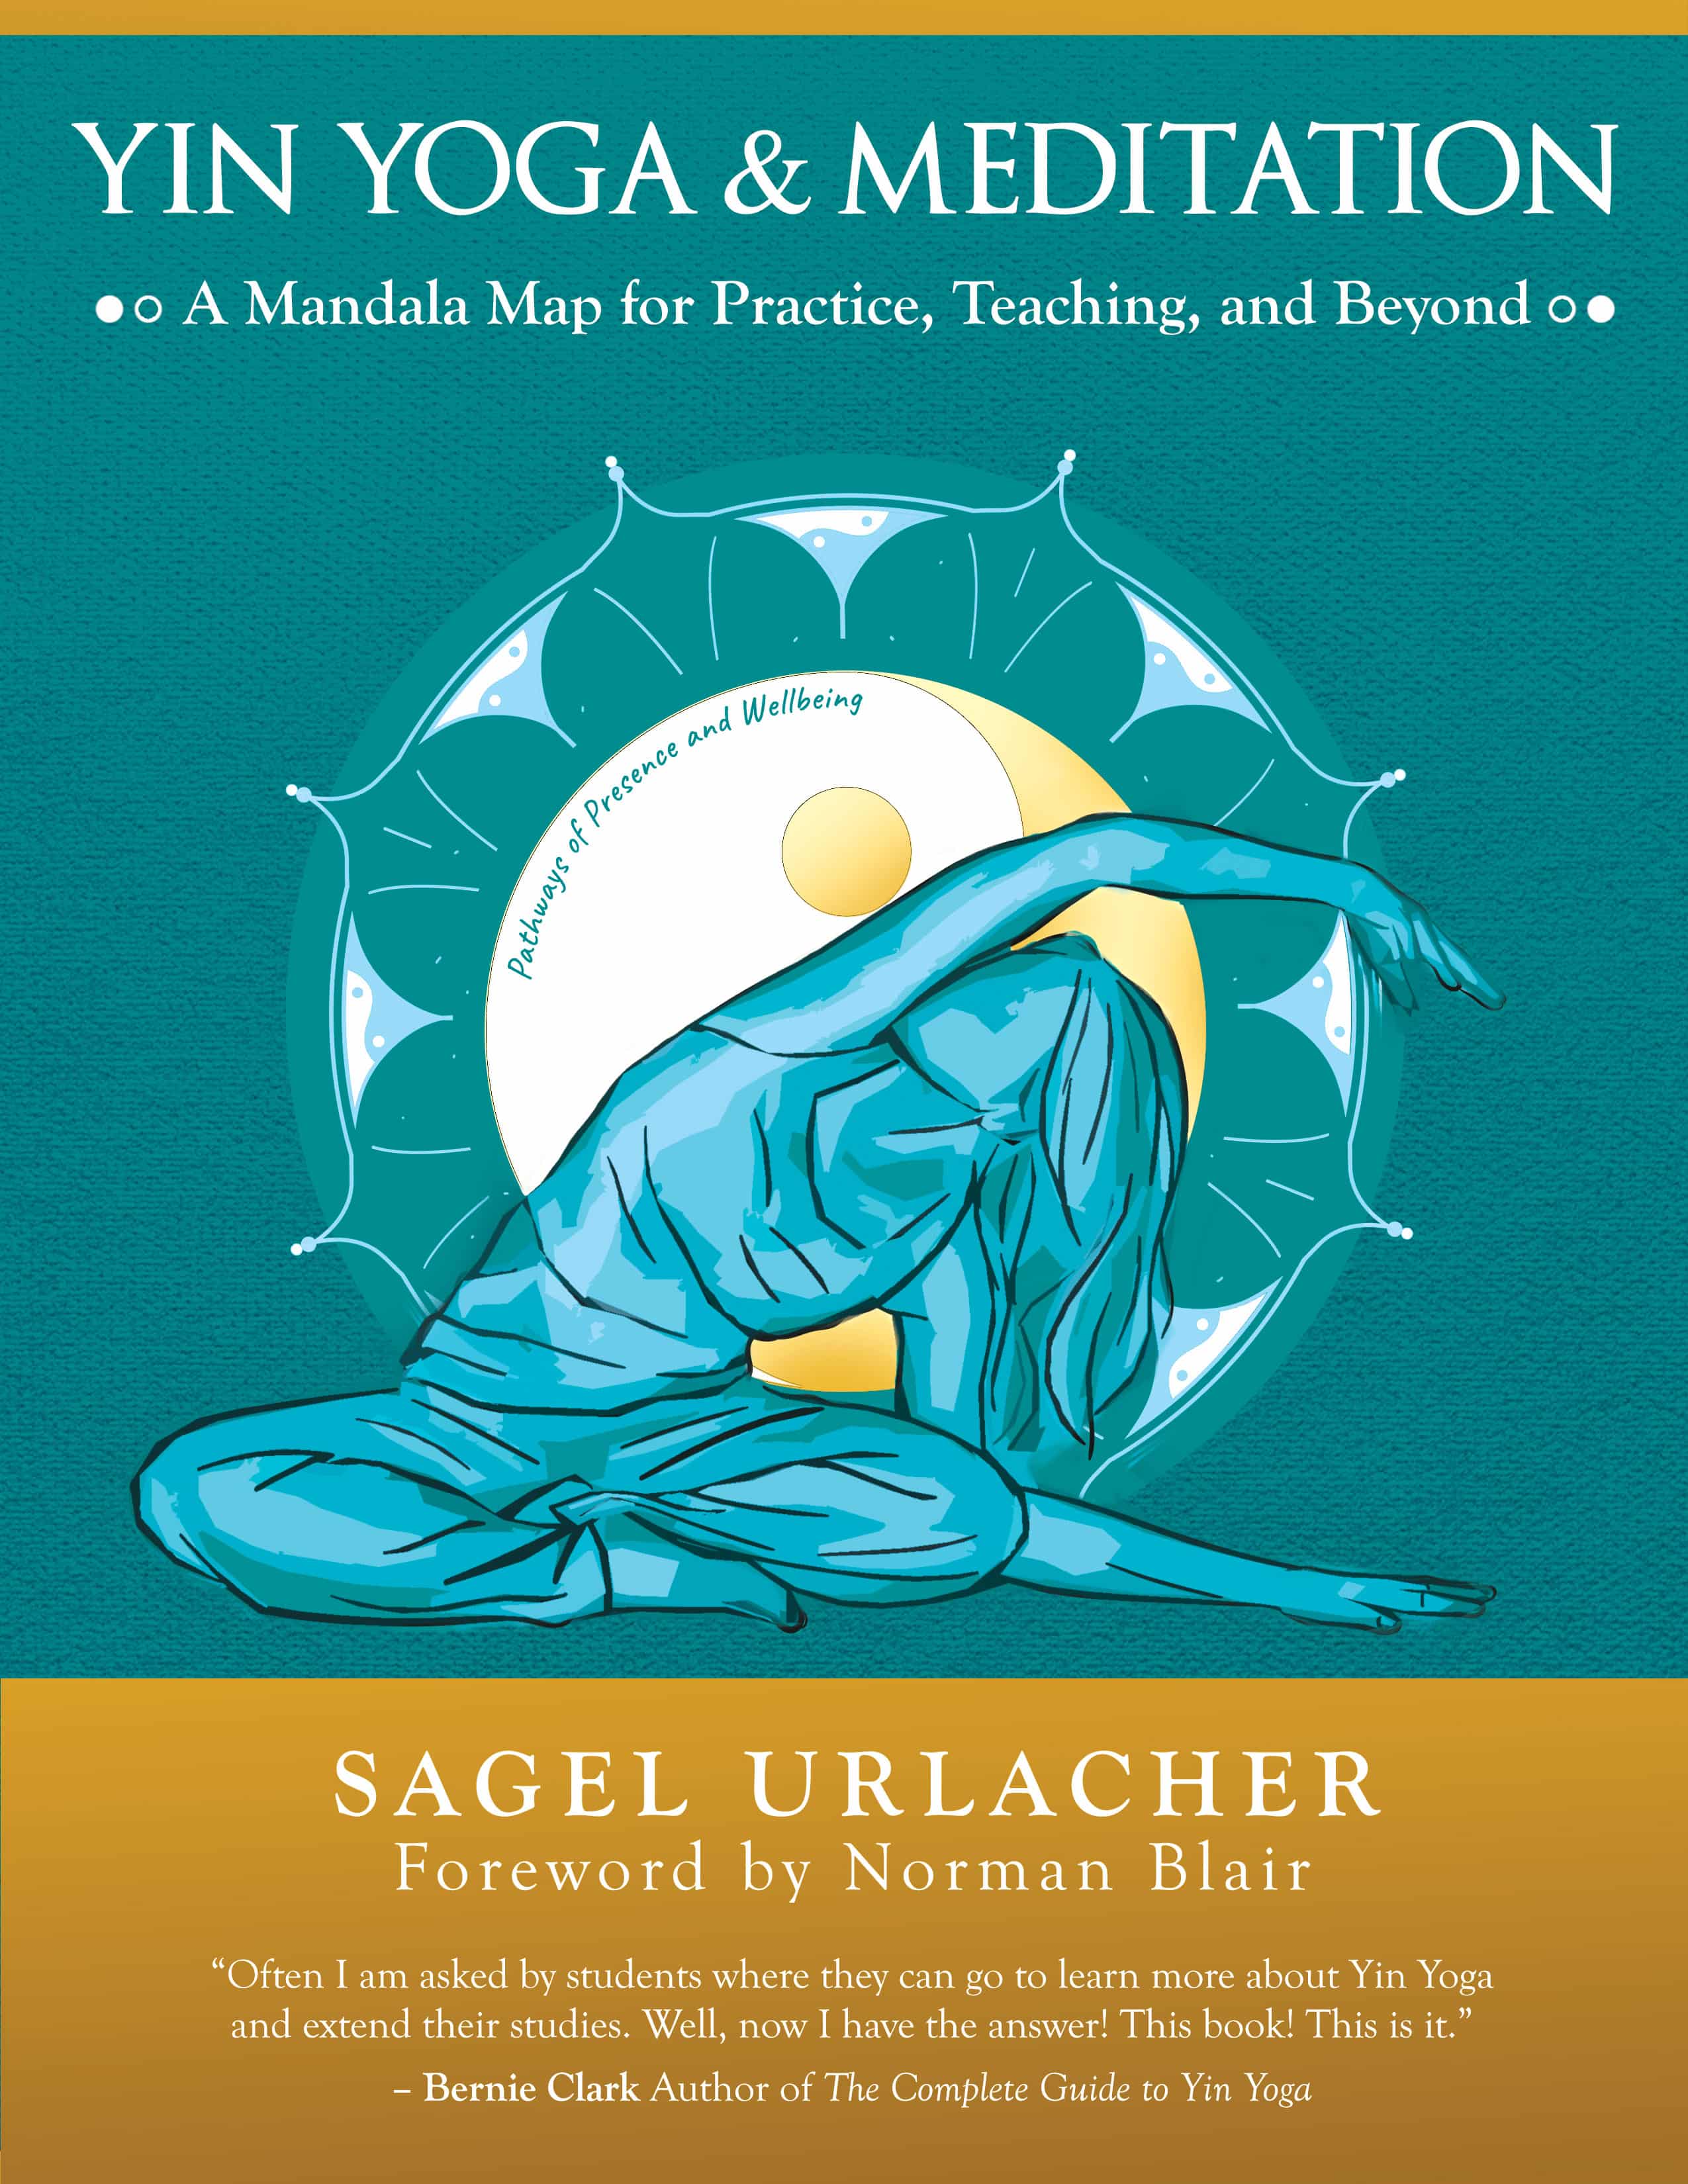 Yin Yoga & Meditation by Sagel Urlacher